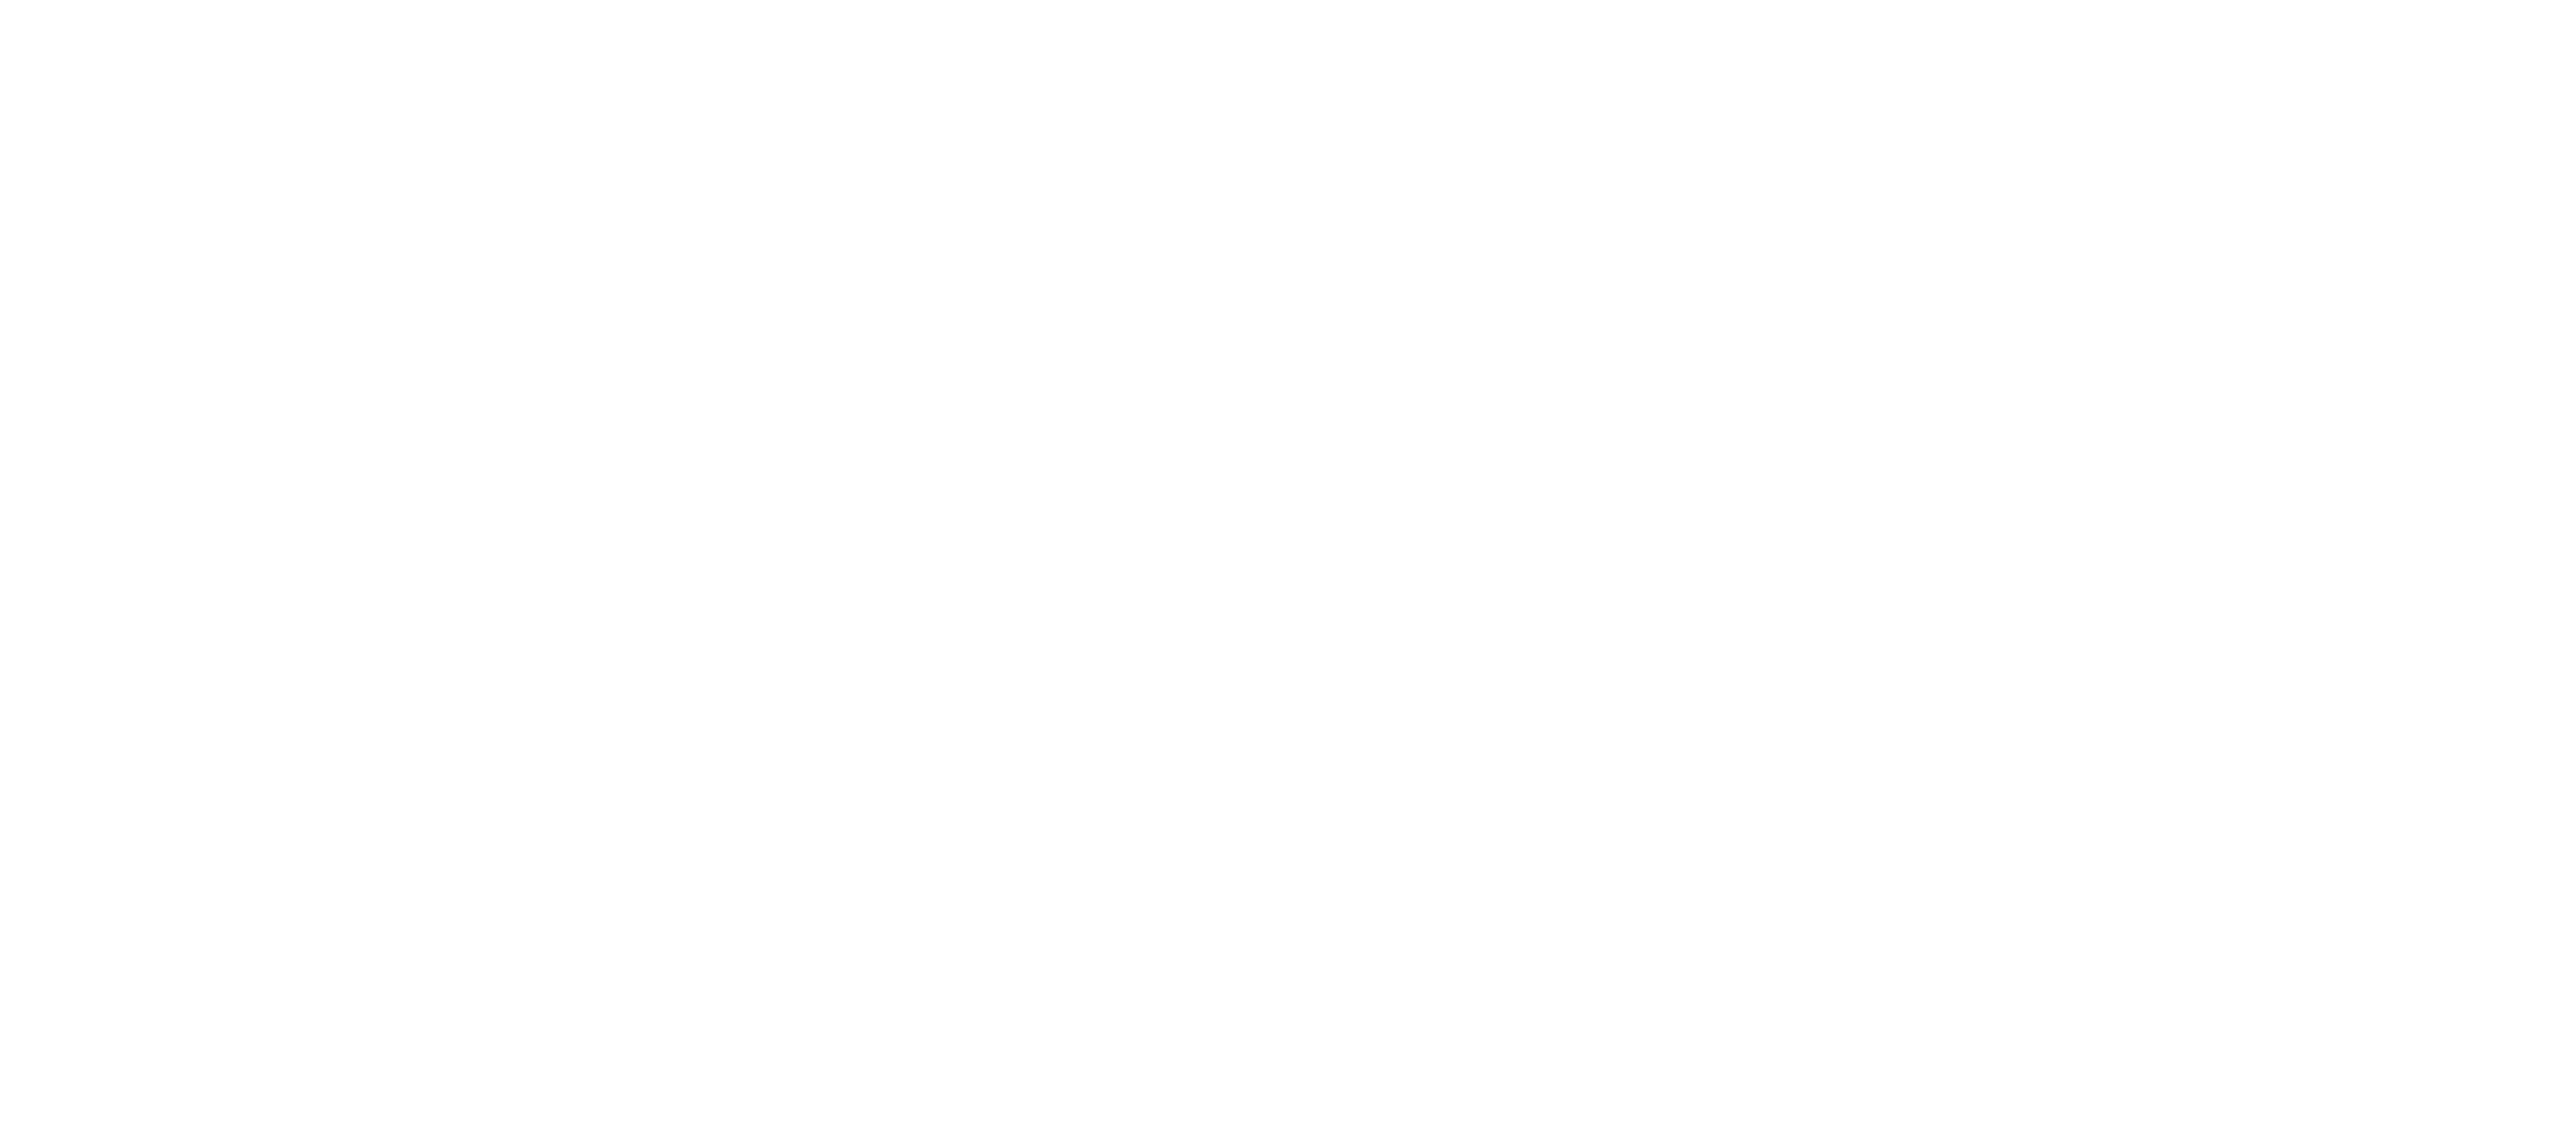 Du votest, ich entscheide! by Slavik Junge